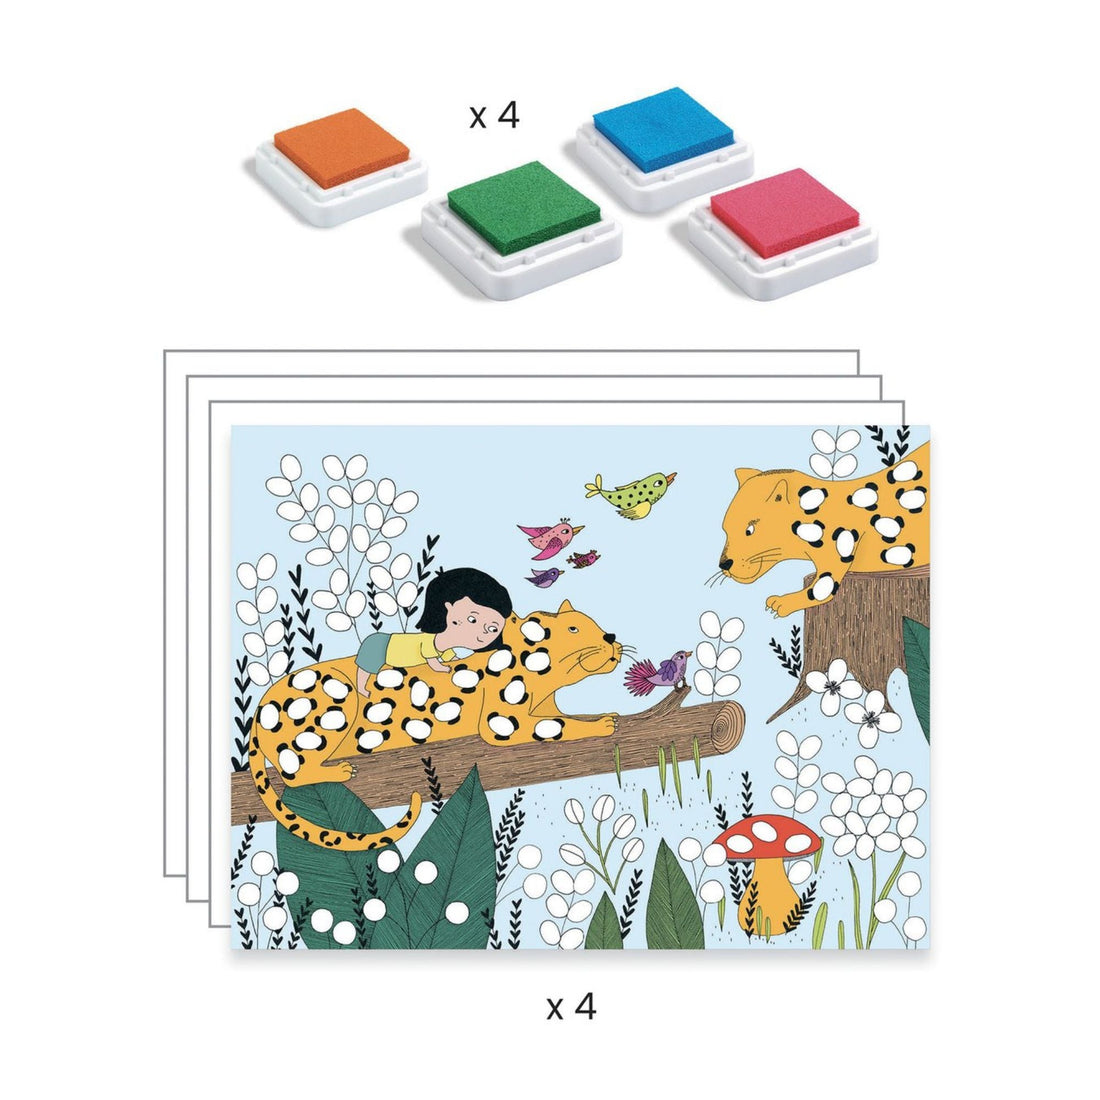 Piešimo žaidimas - Touch and Paint! - little-goose.com